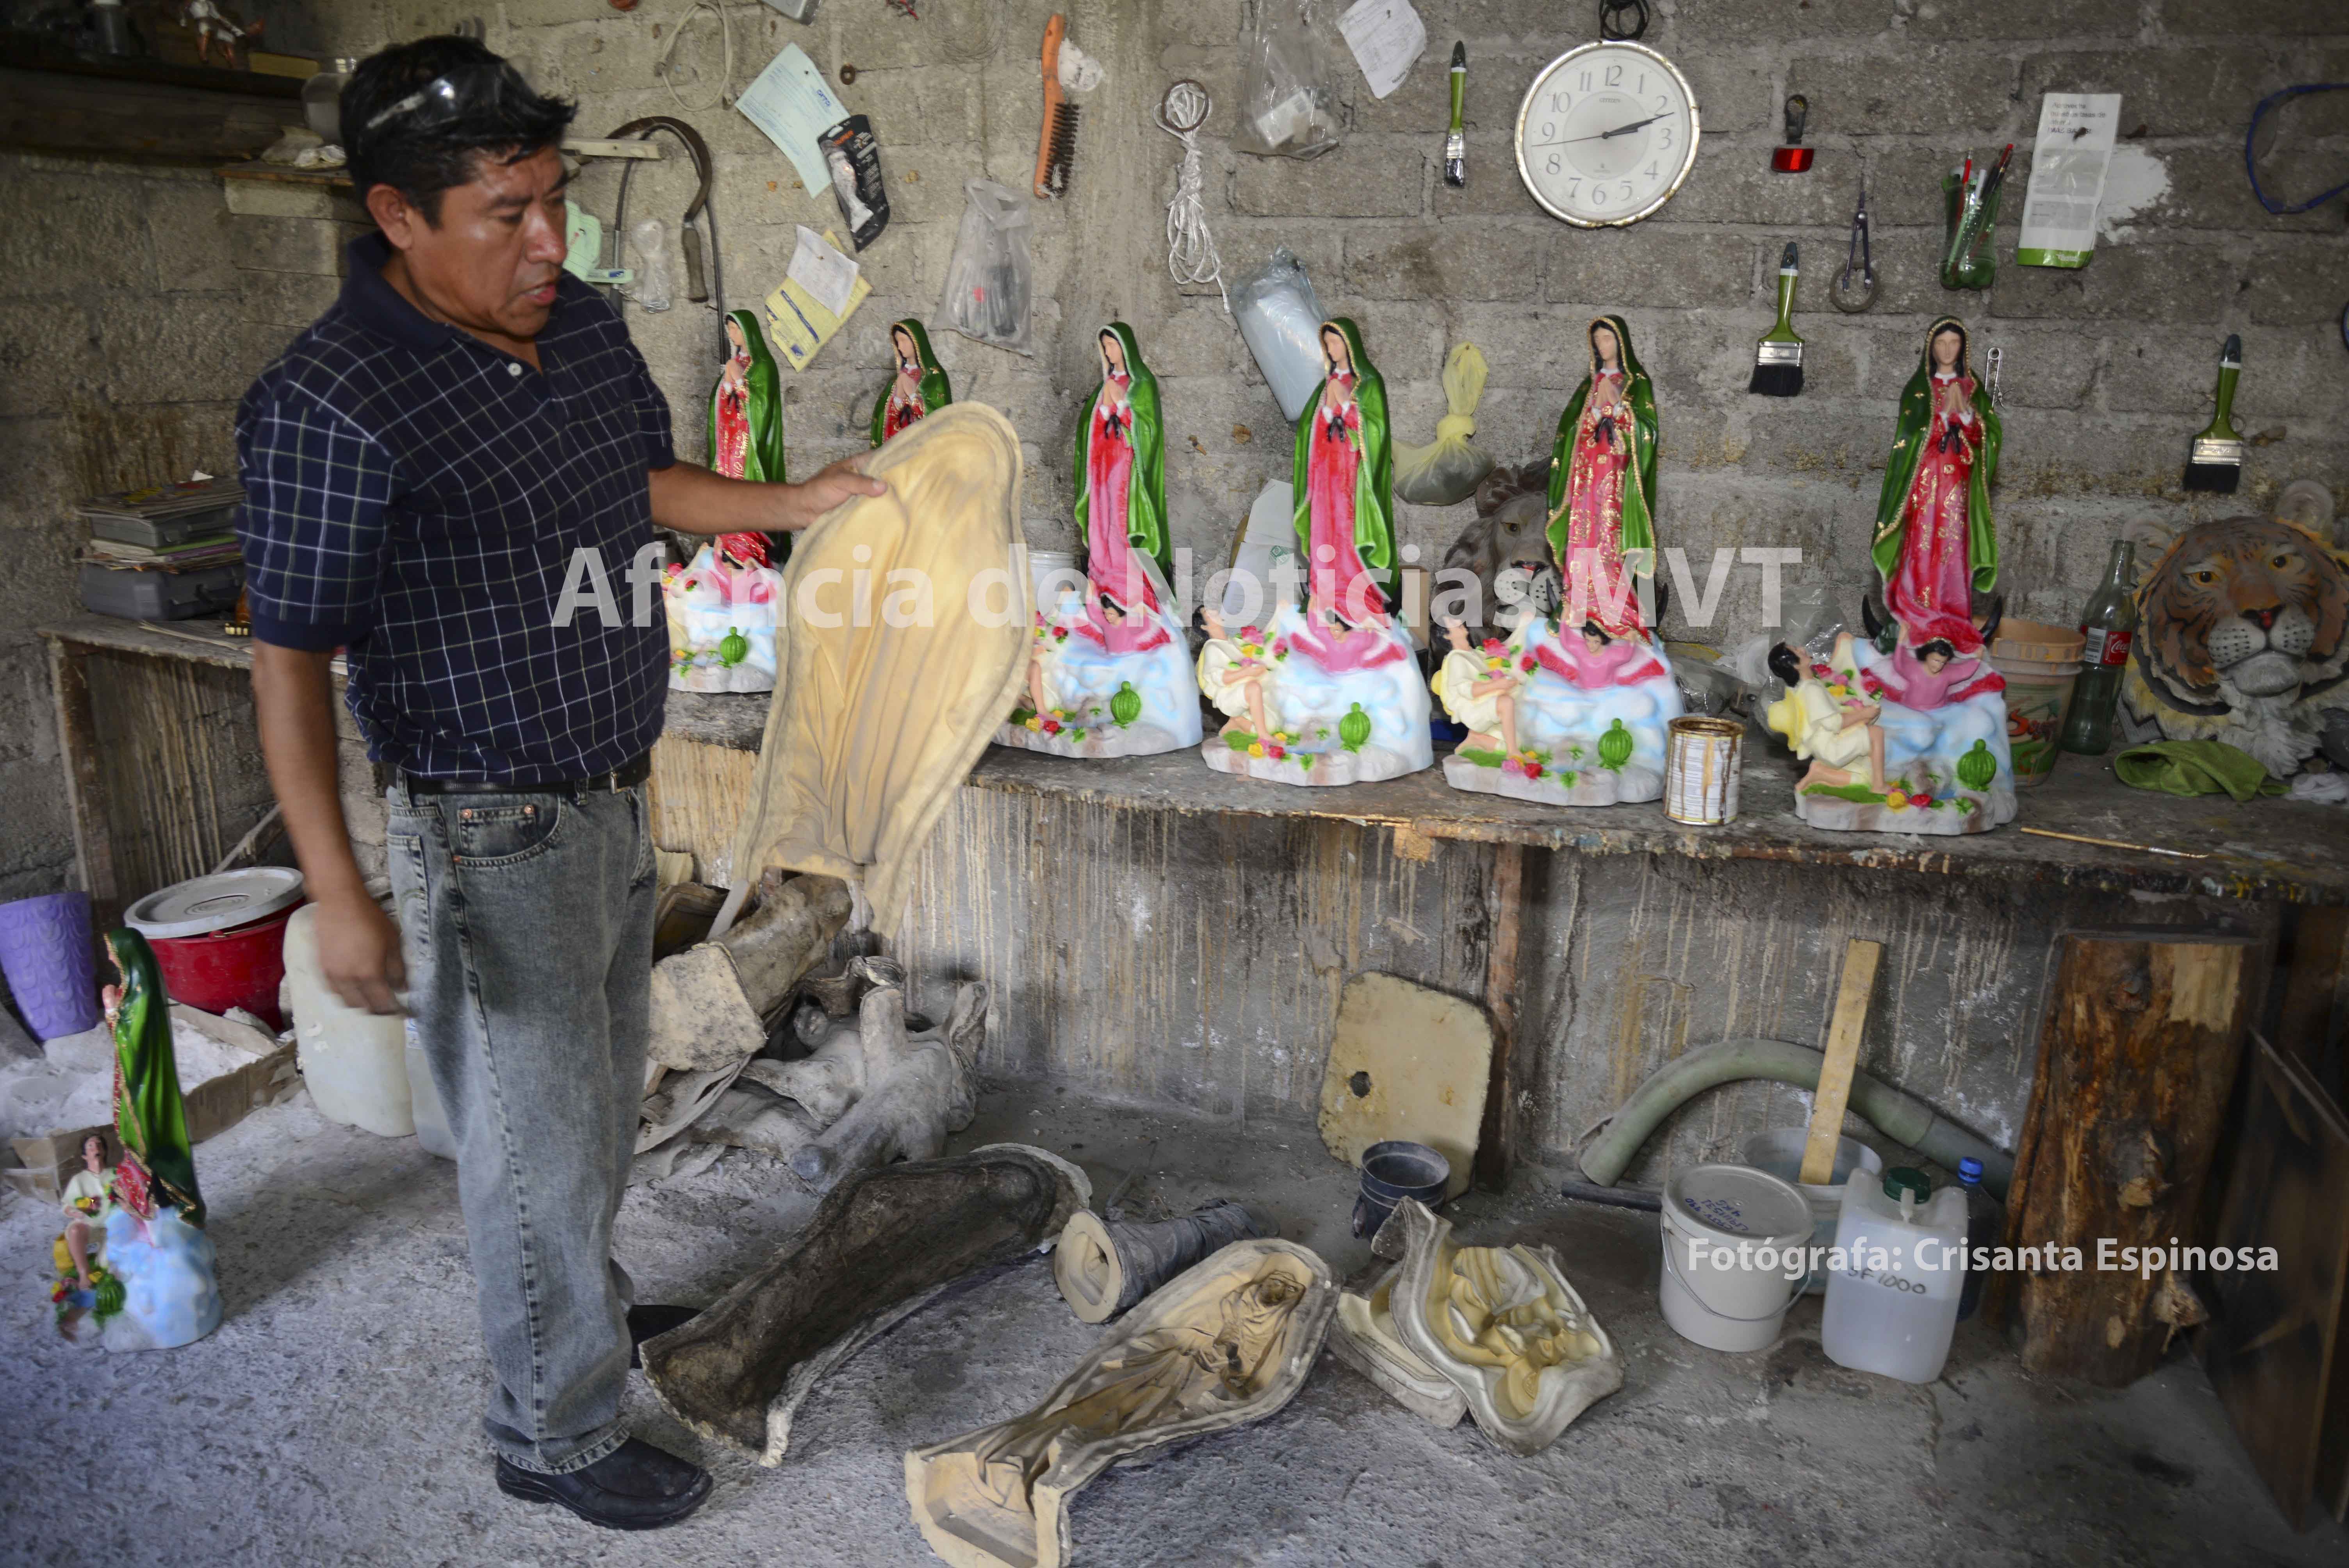 Invaden el mercado local Vírgenes de Guadalupe chinas